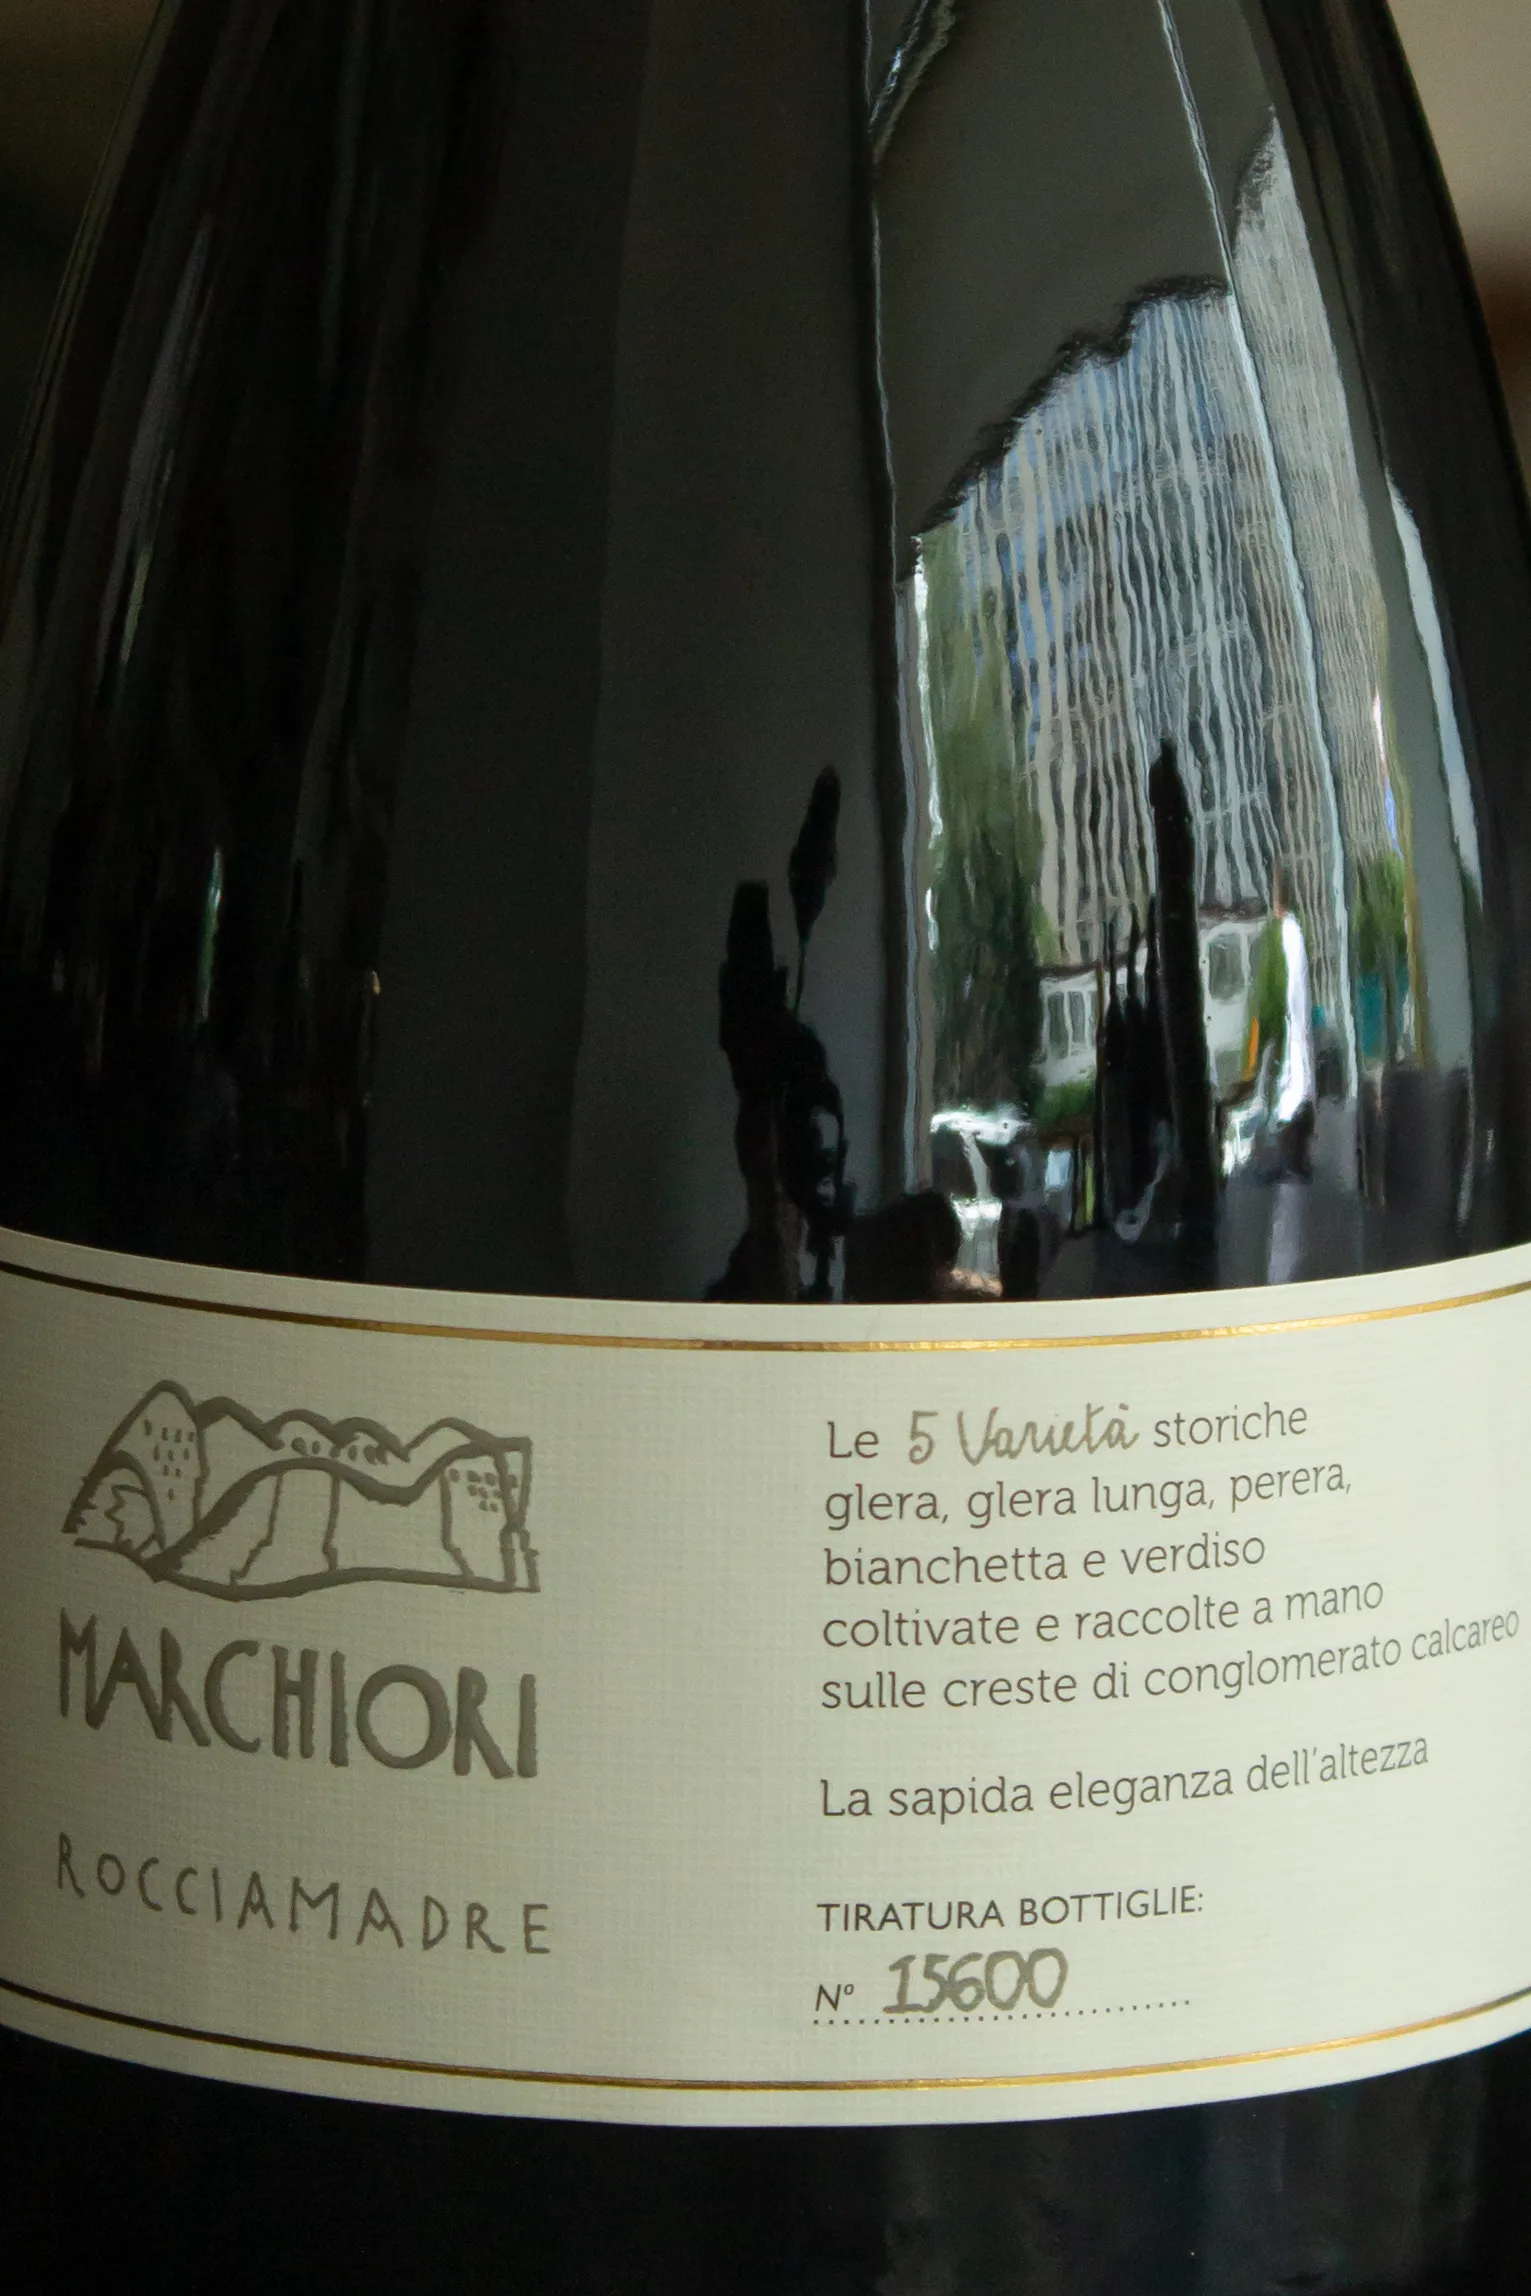 Игристое вино Marchiori Rocciamadre Valdobbiadene Prosecco Superiore Brut / Маркьори Рокчимадре Вальдобьядене Просекко Супериоре